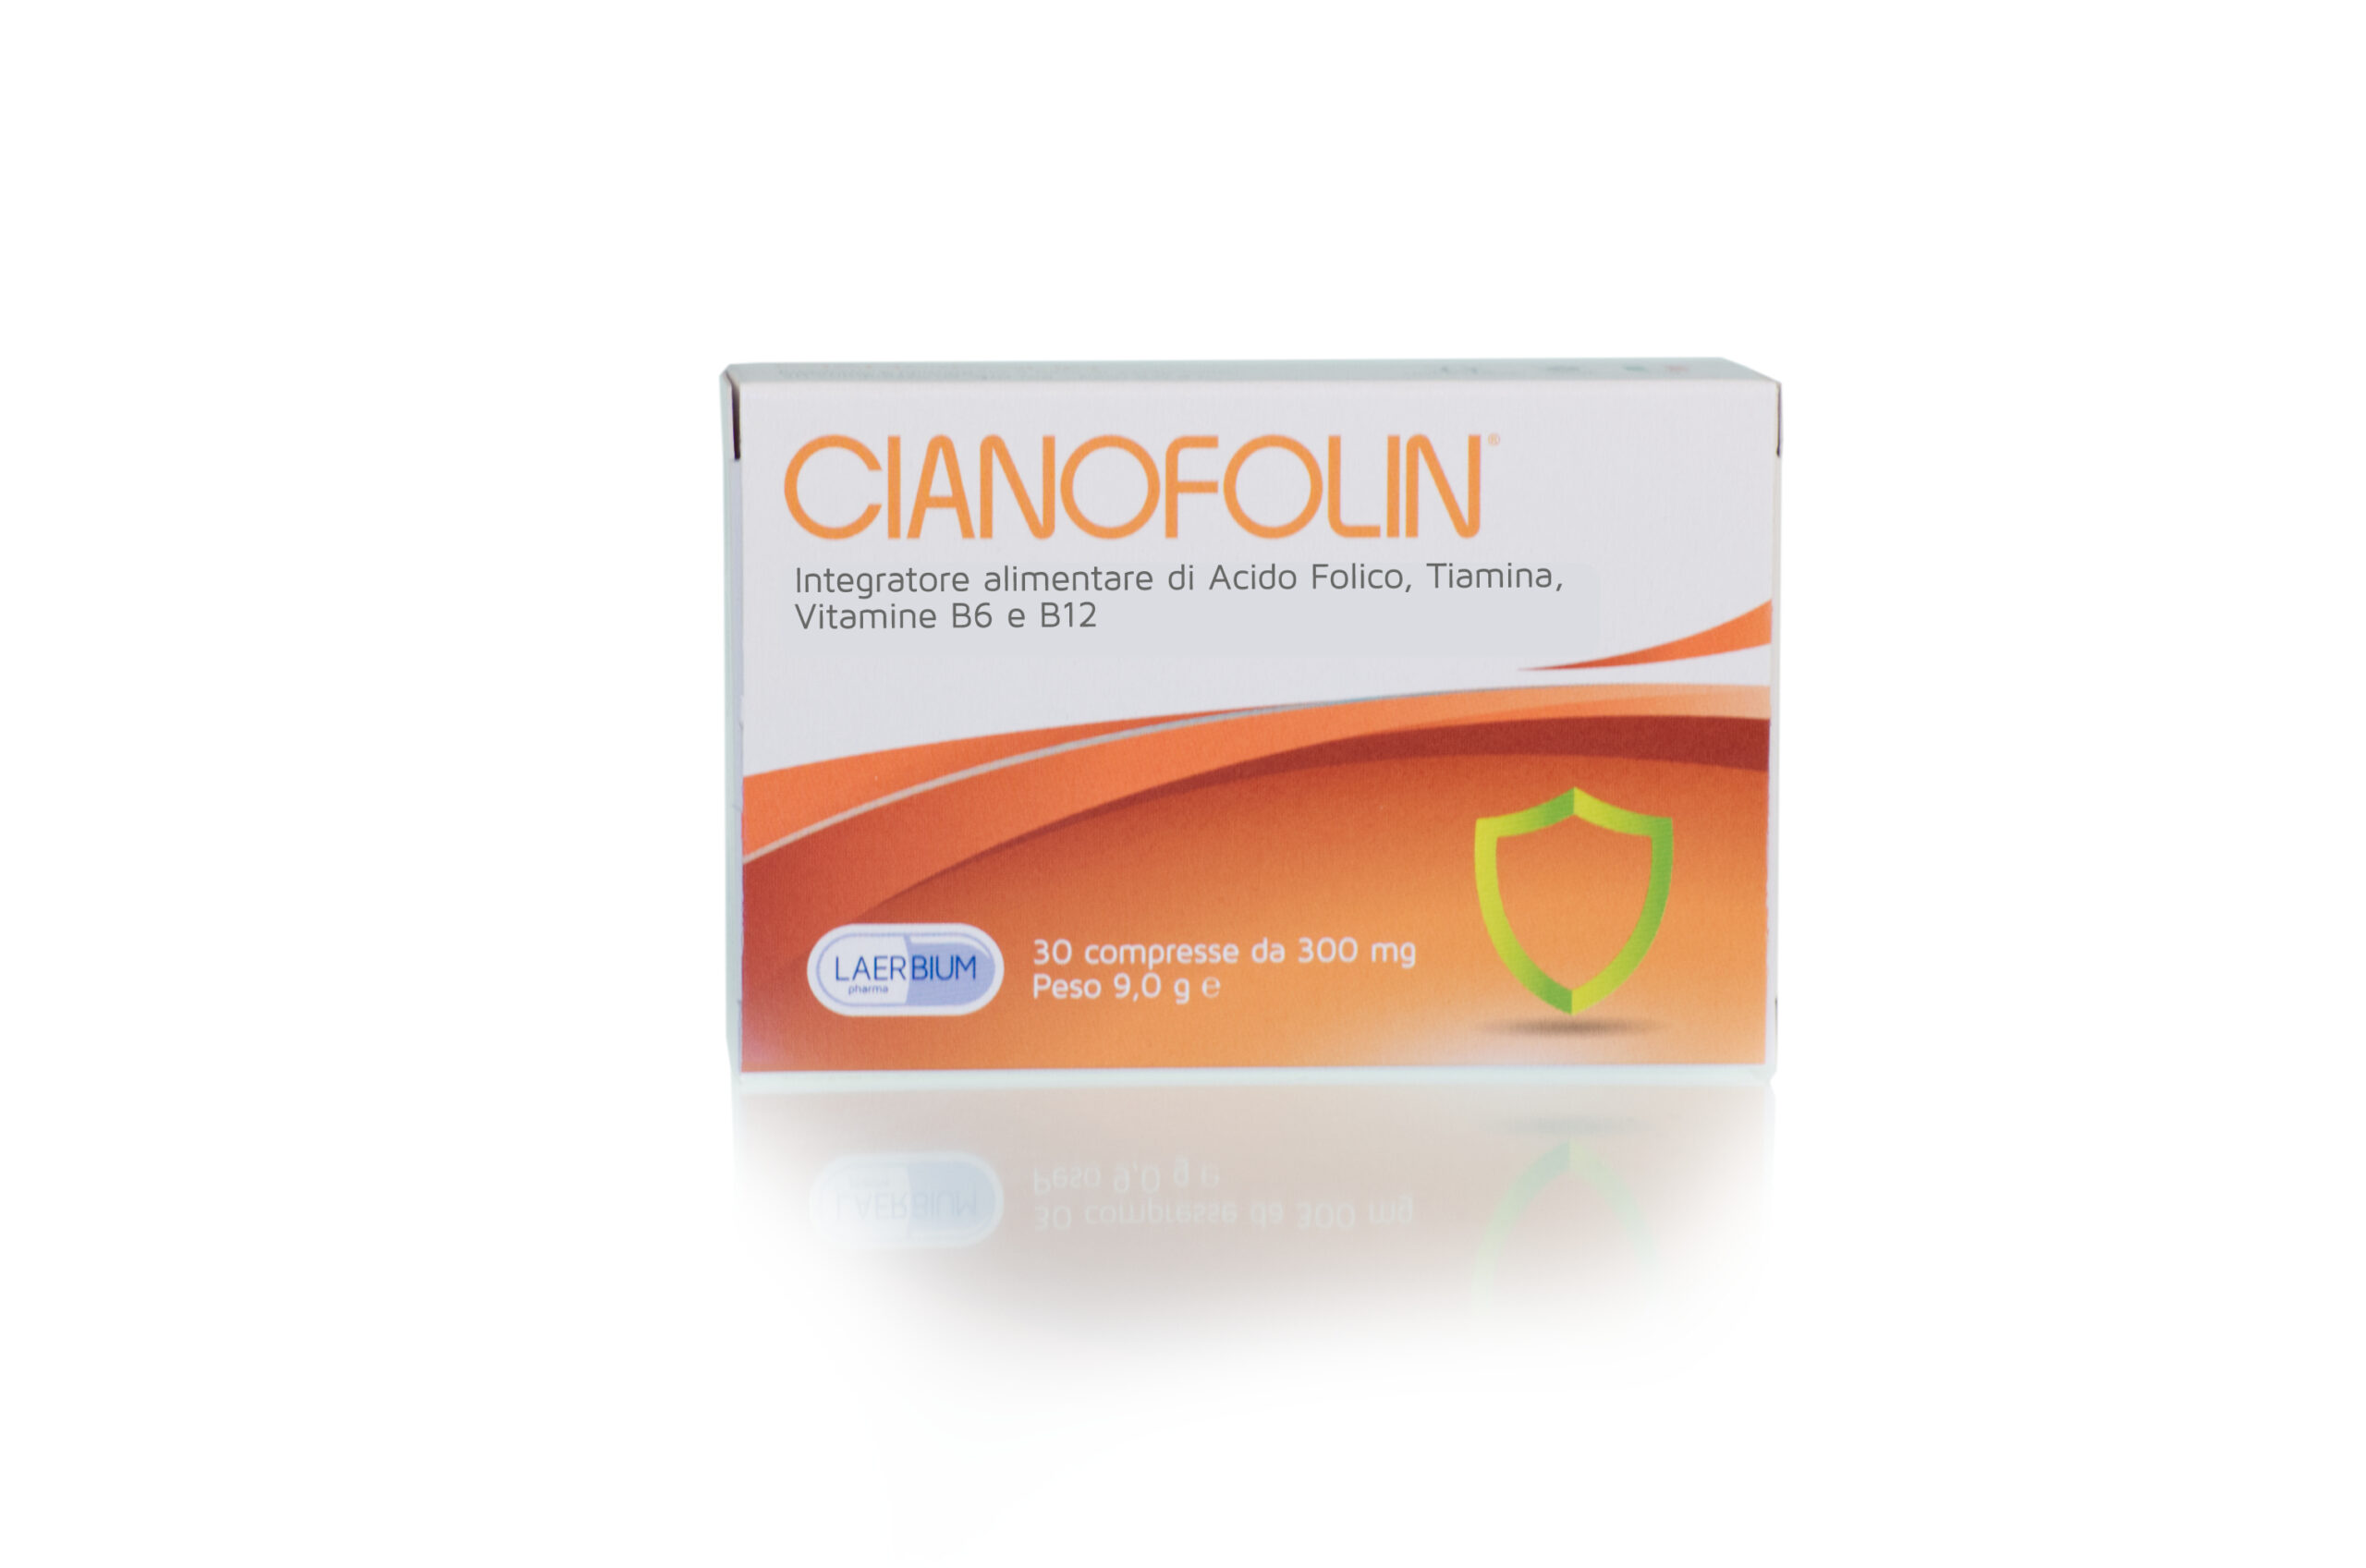 Cianofolin - Integrazione quotidiana di Vitamina B6, B12 e Acido